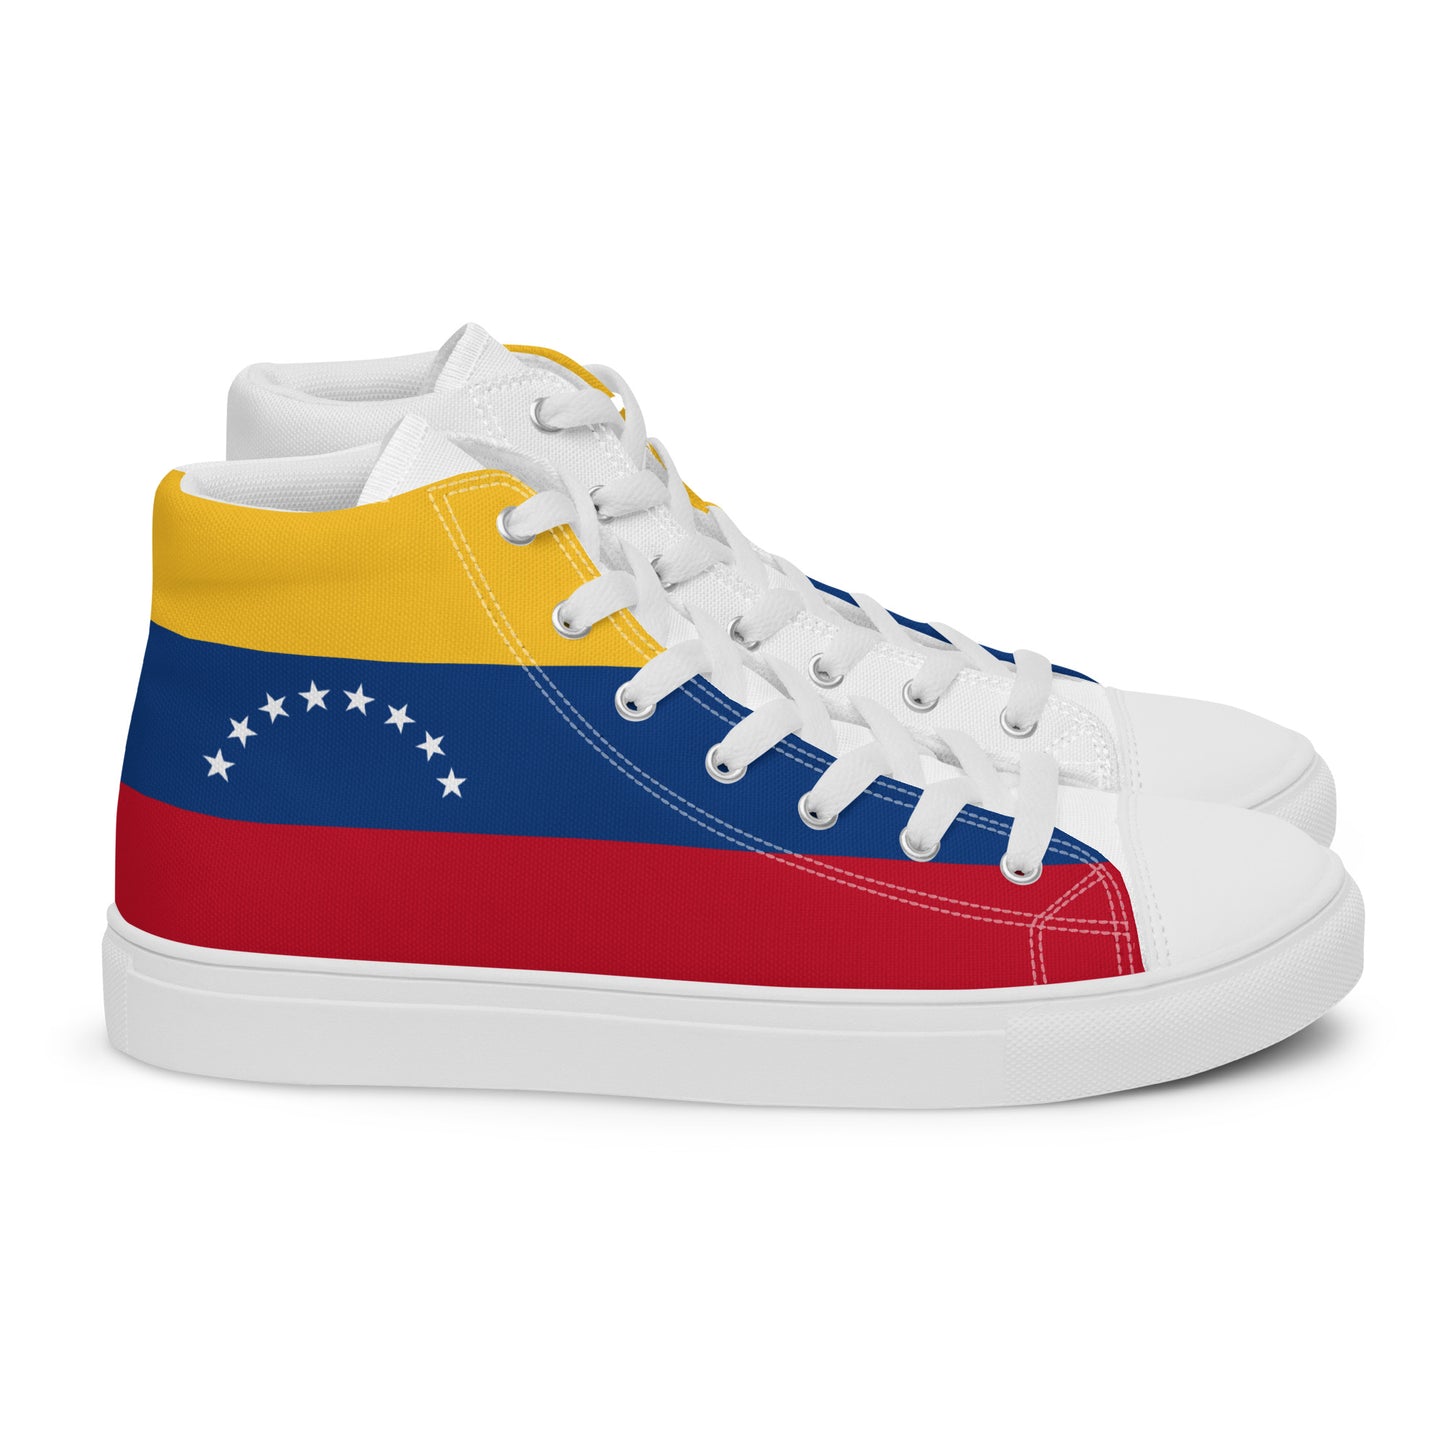 Venezuela - Women - Bandera - High top shoes